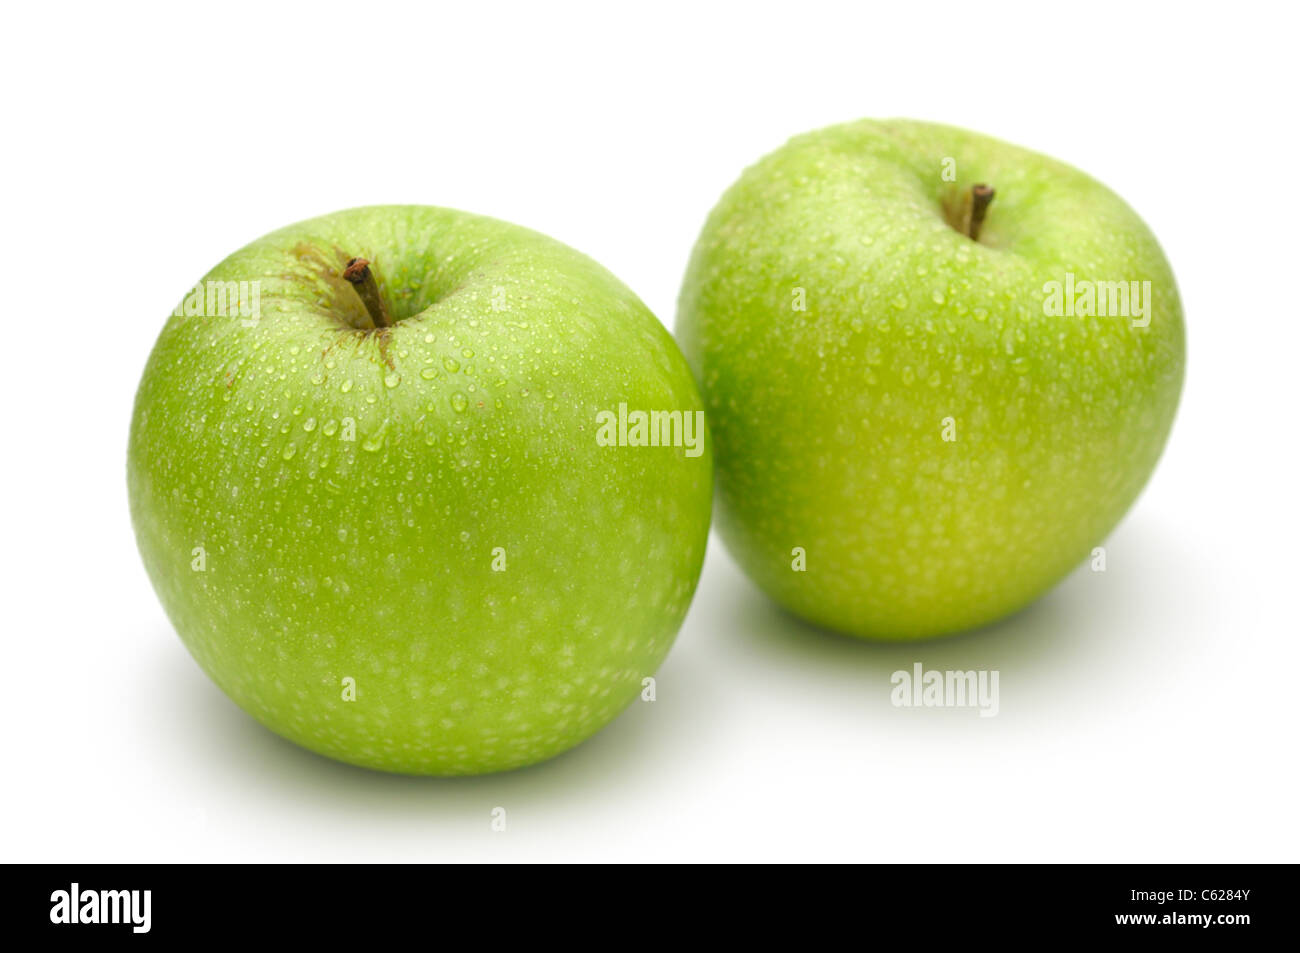 La variedad Granny Smith, toda la manzana verde Foto de stock